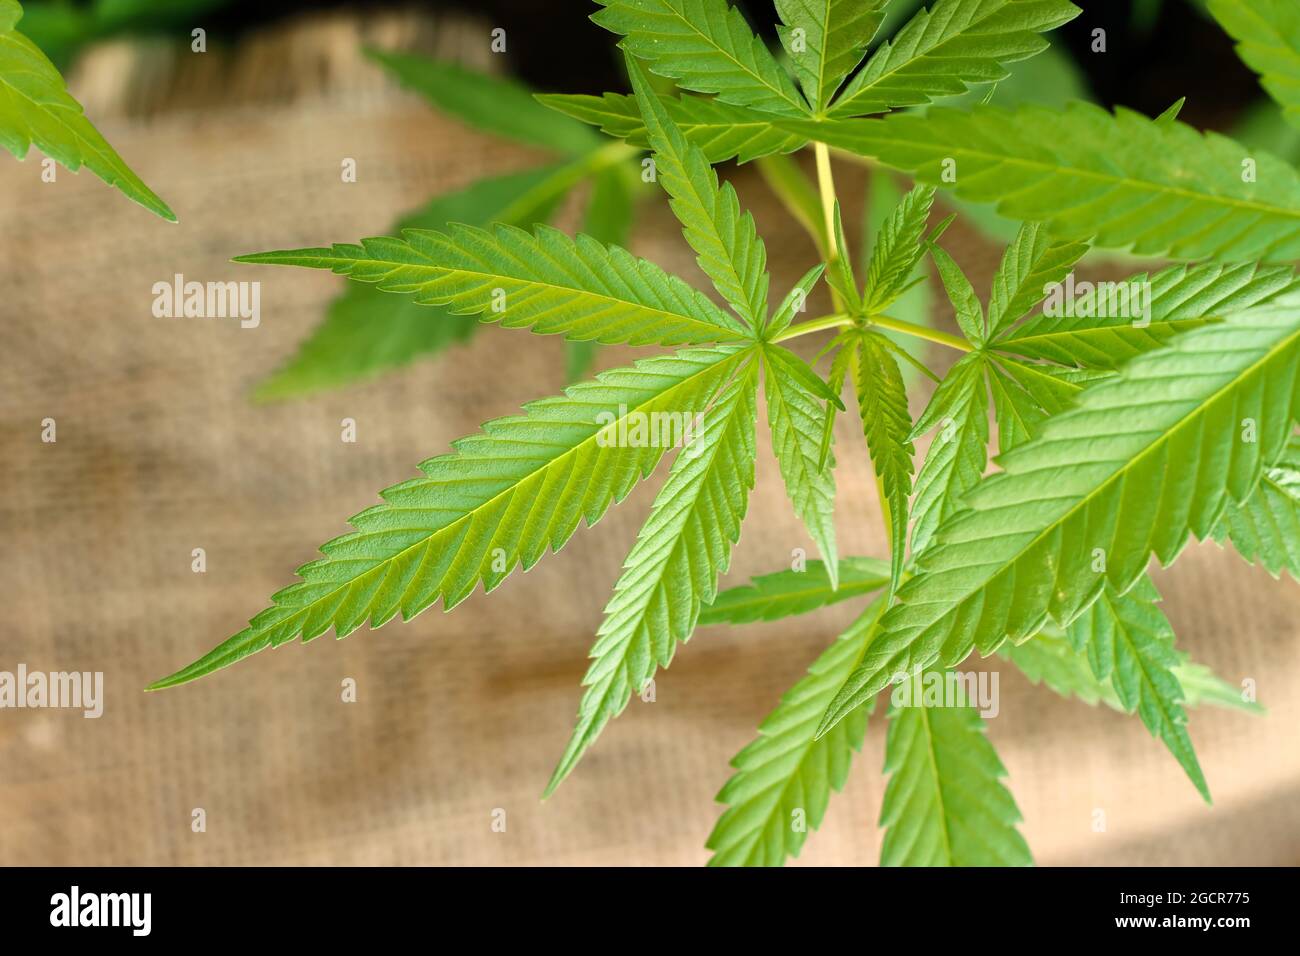 Nahaufnahme junger Hanf (Cannabis sativa) Blatt, Hanfbaum in der Textilindustrie verwendet Stockfoto